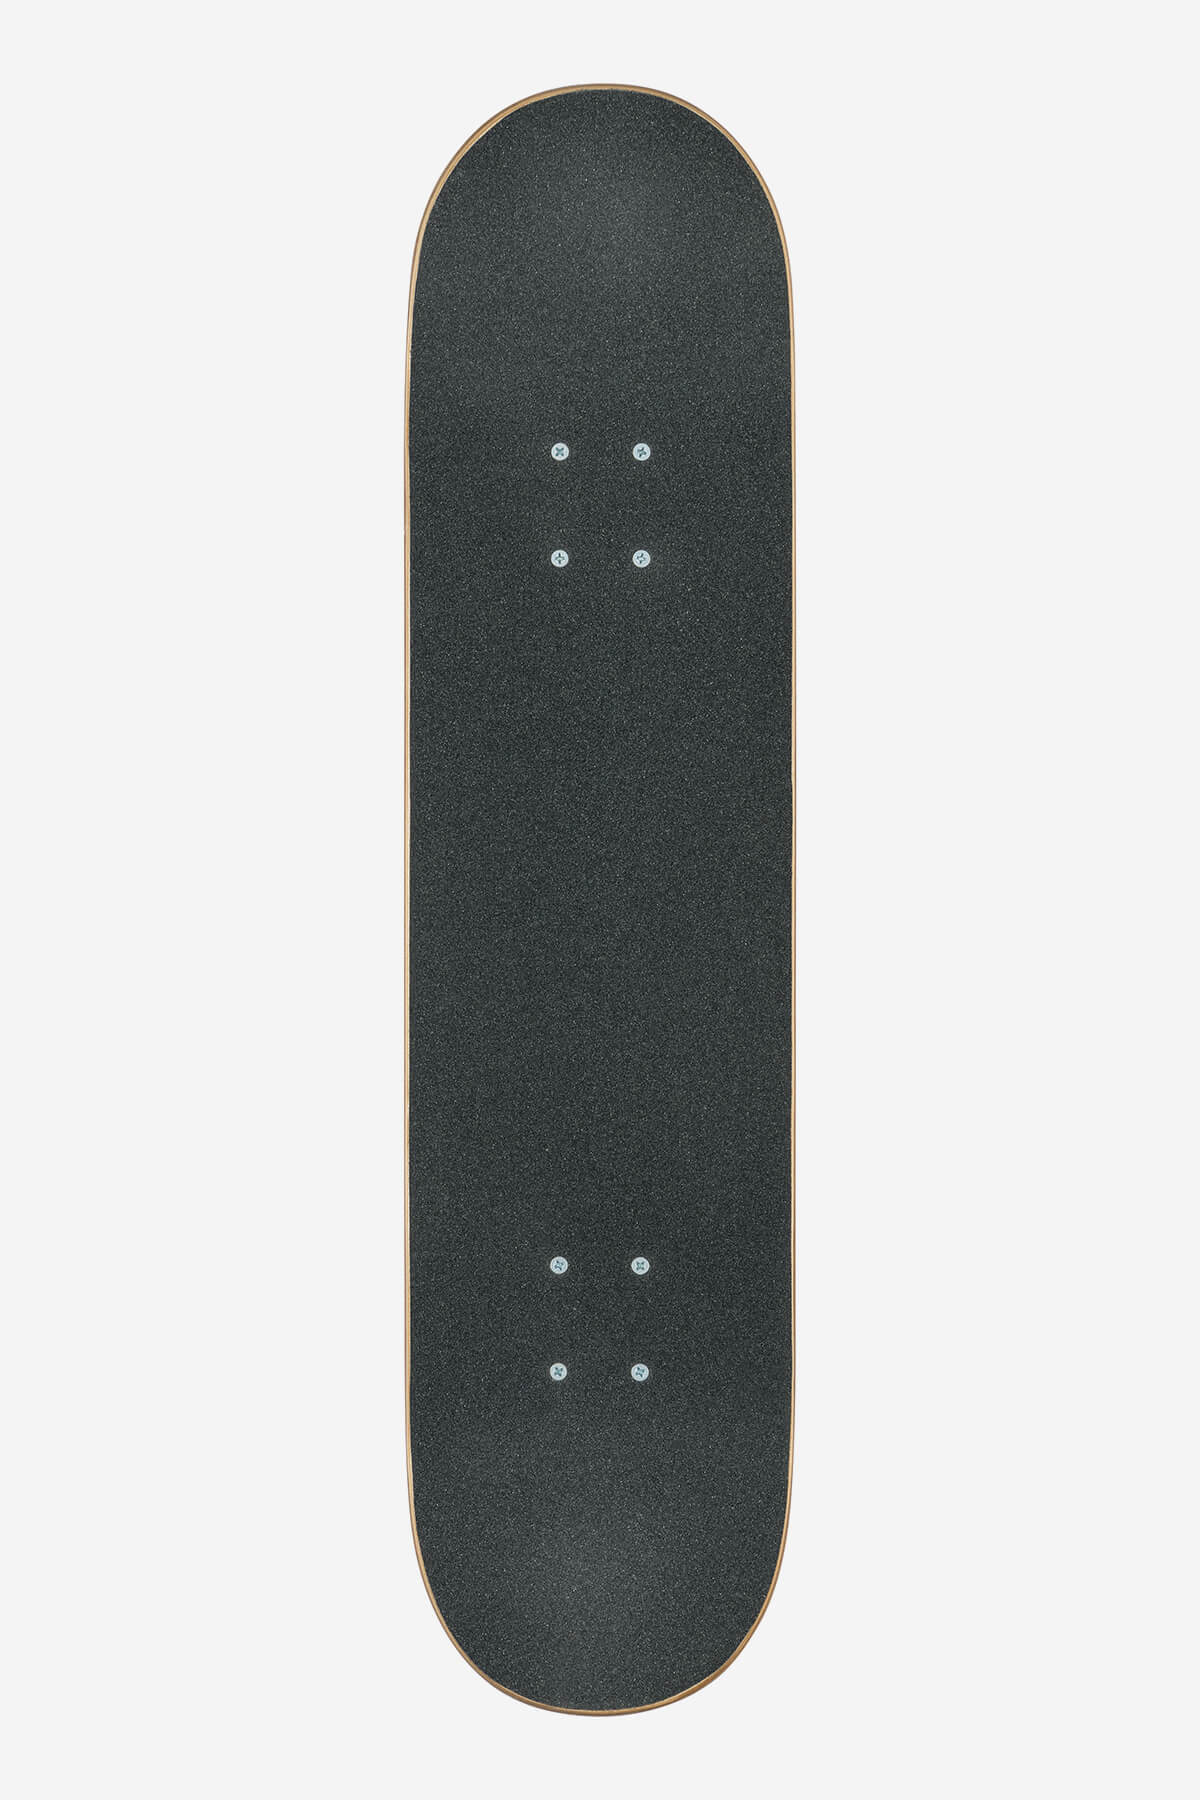 g0 fubar black red 7.75" complete skateboard